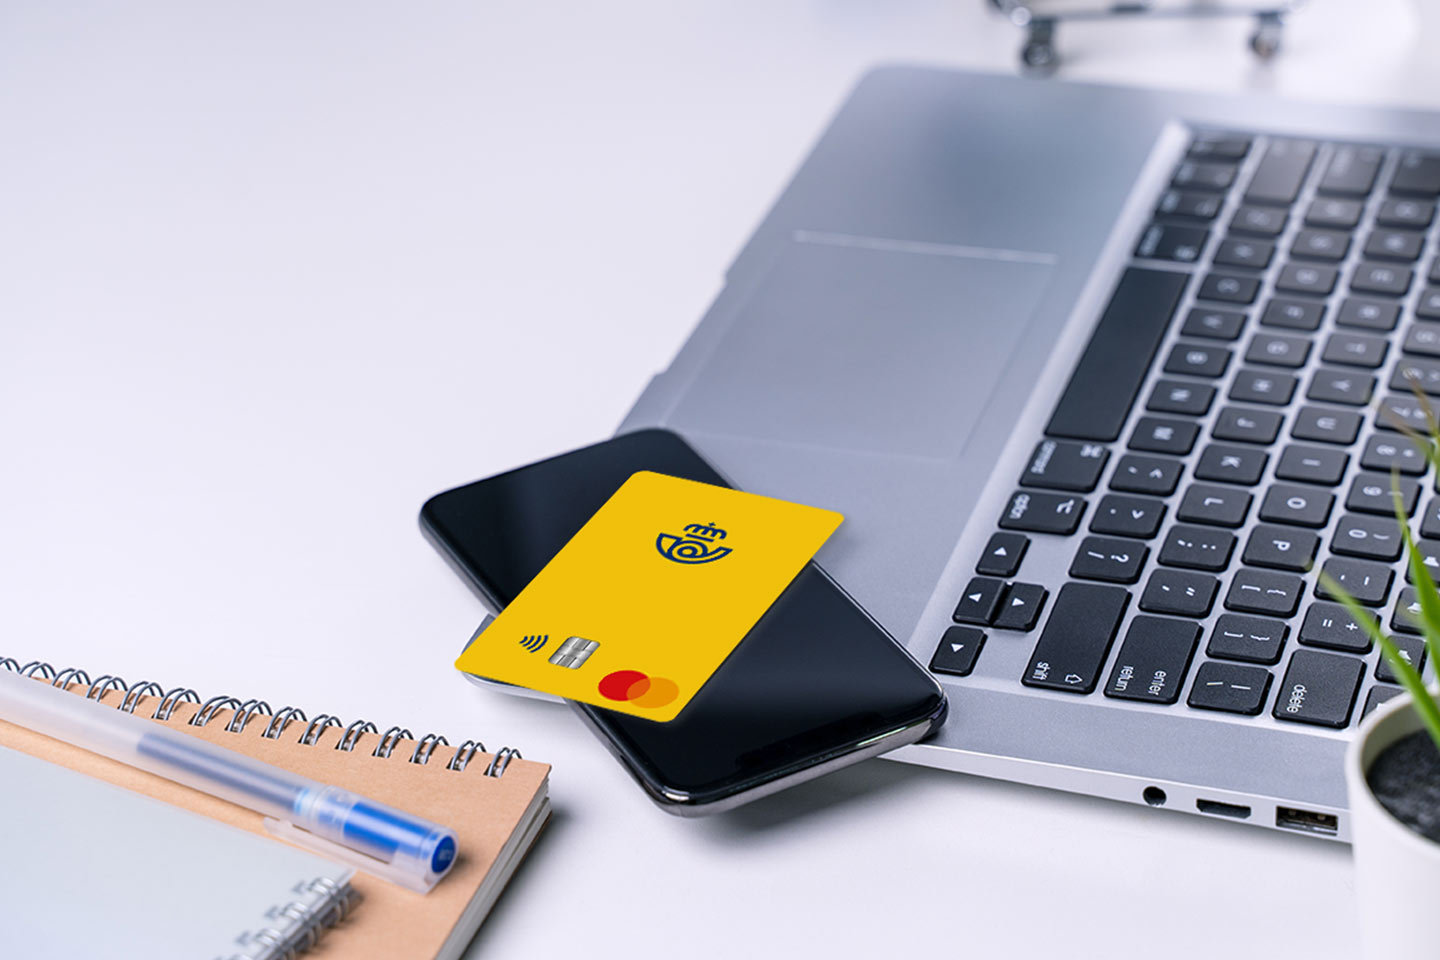 Nace Correos Prepago, una tarjeta recargable que facilita los pagos seguros  a todo tipo de clientes - Marketing Directo